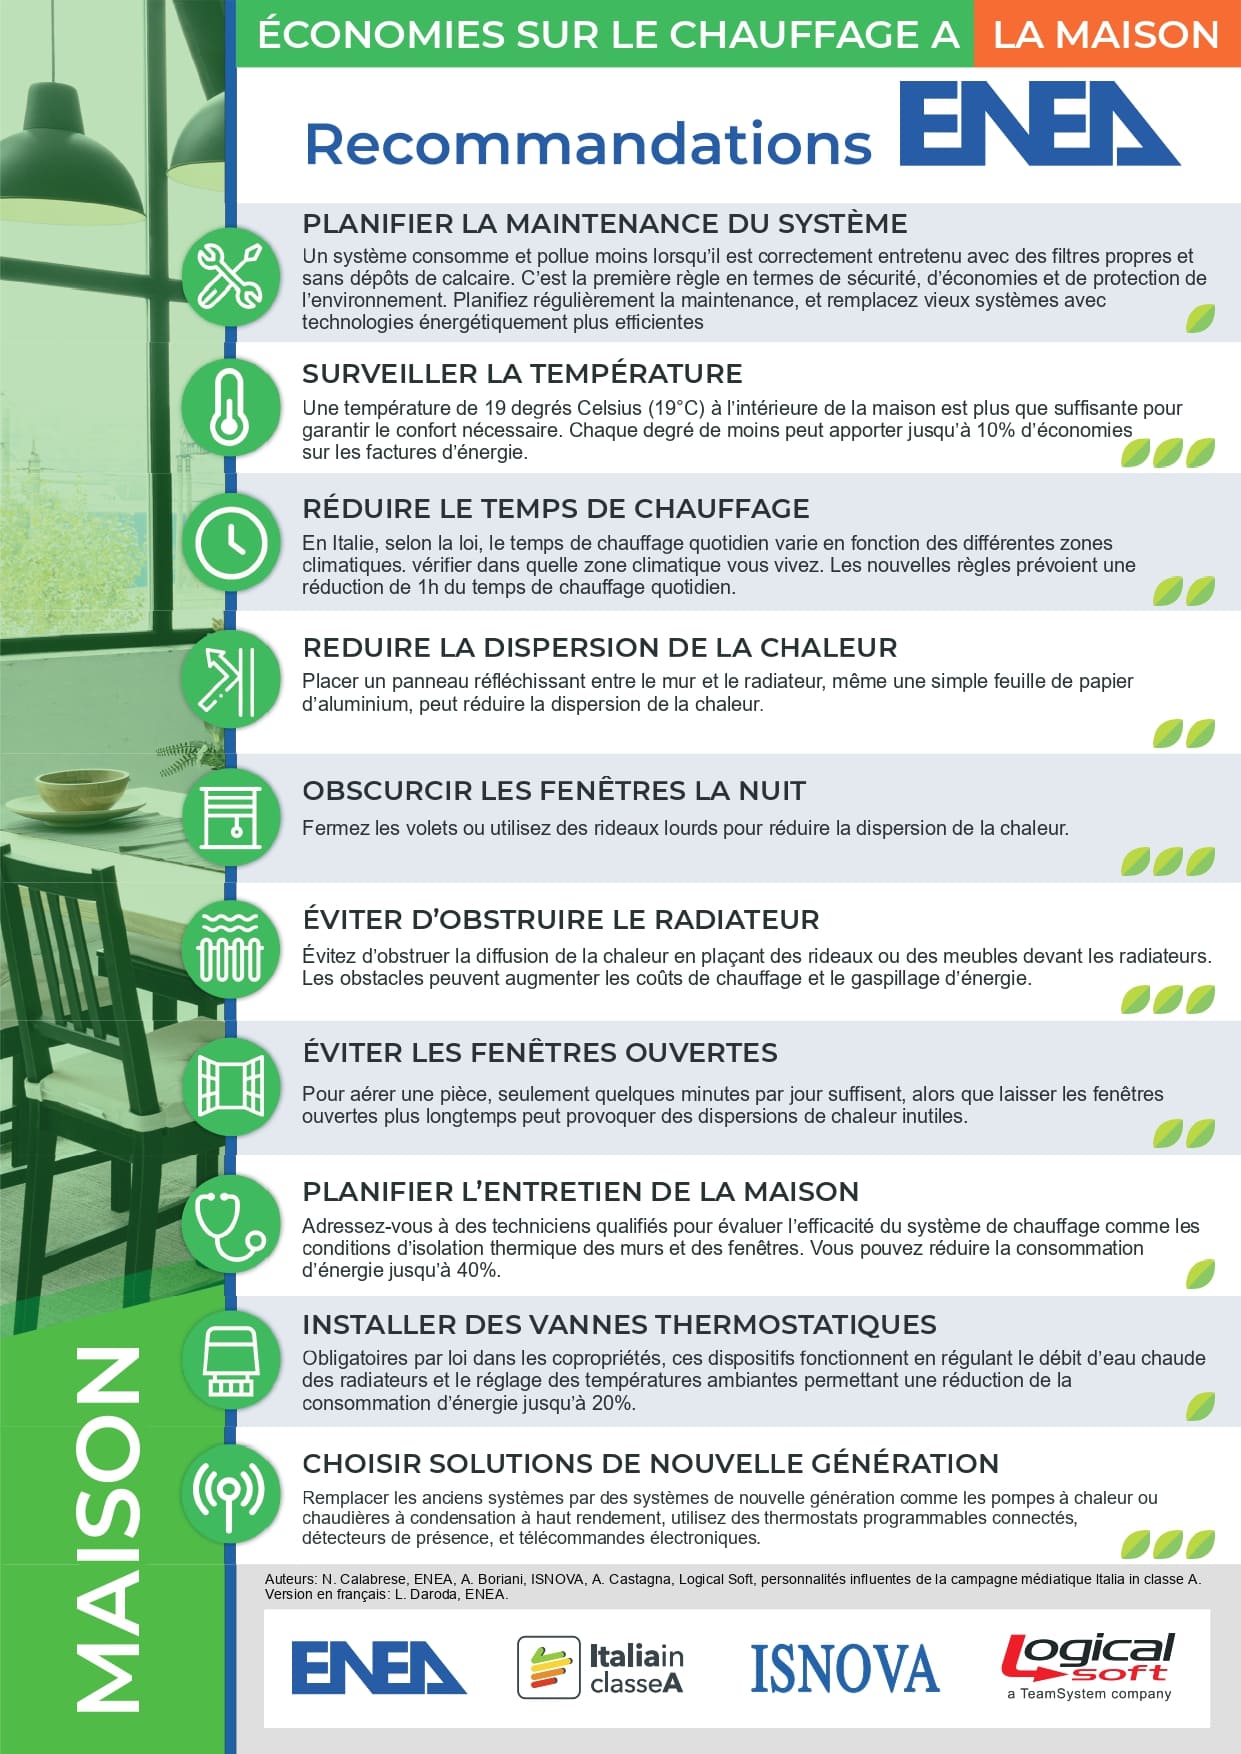 L'immagine del Poster in francese per ridurre i consumi nelle abitazioni con i loghi ENEA, Italia in Classe A, ISNOVA e Logical Soft